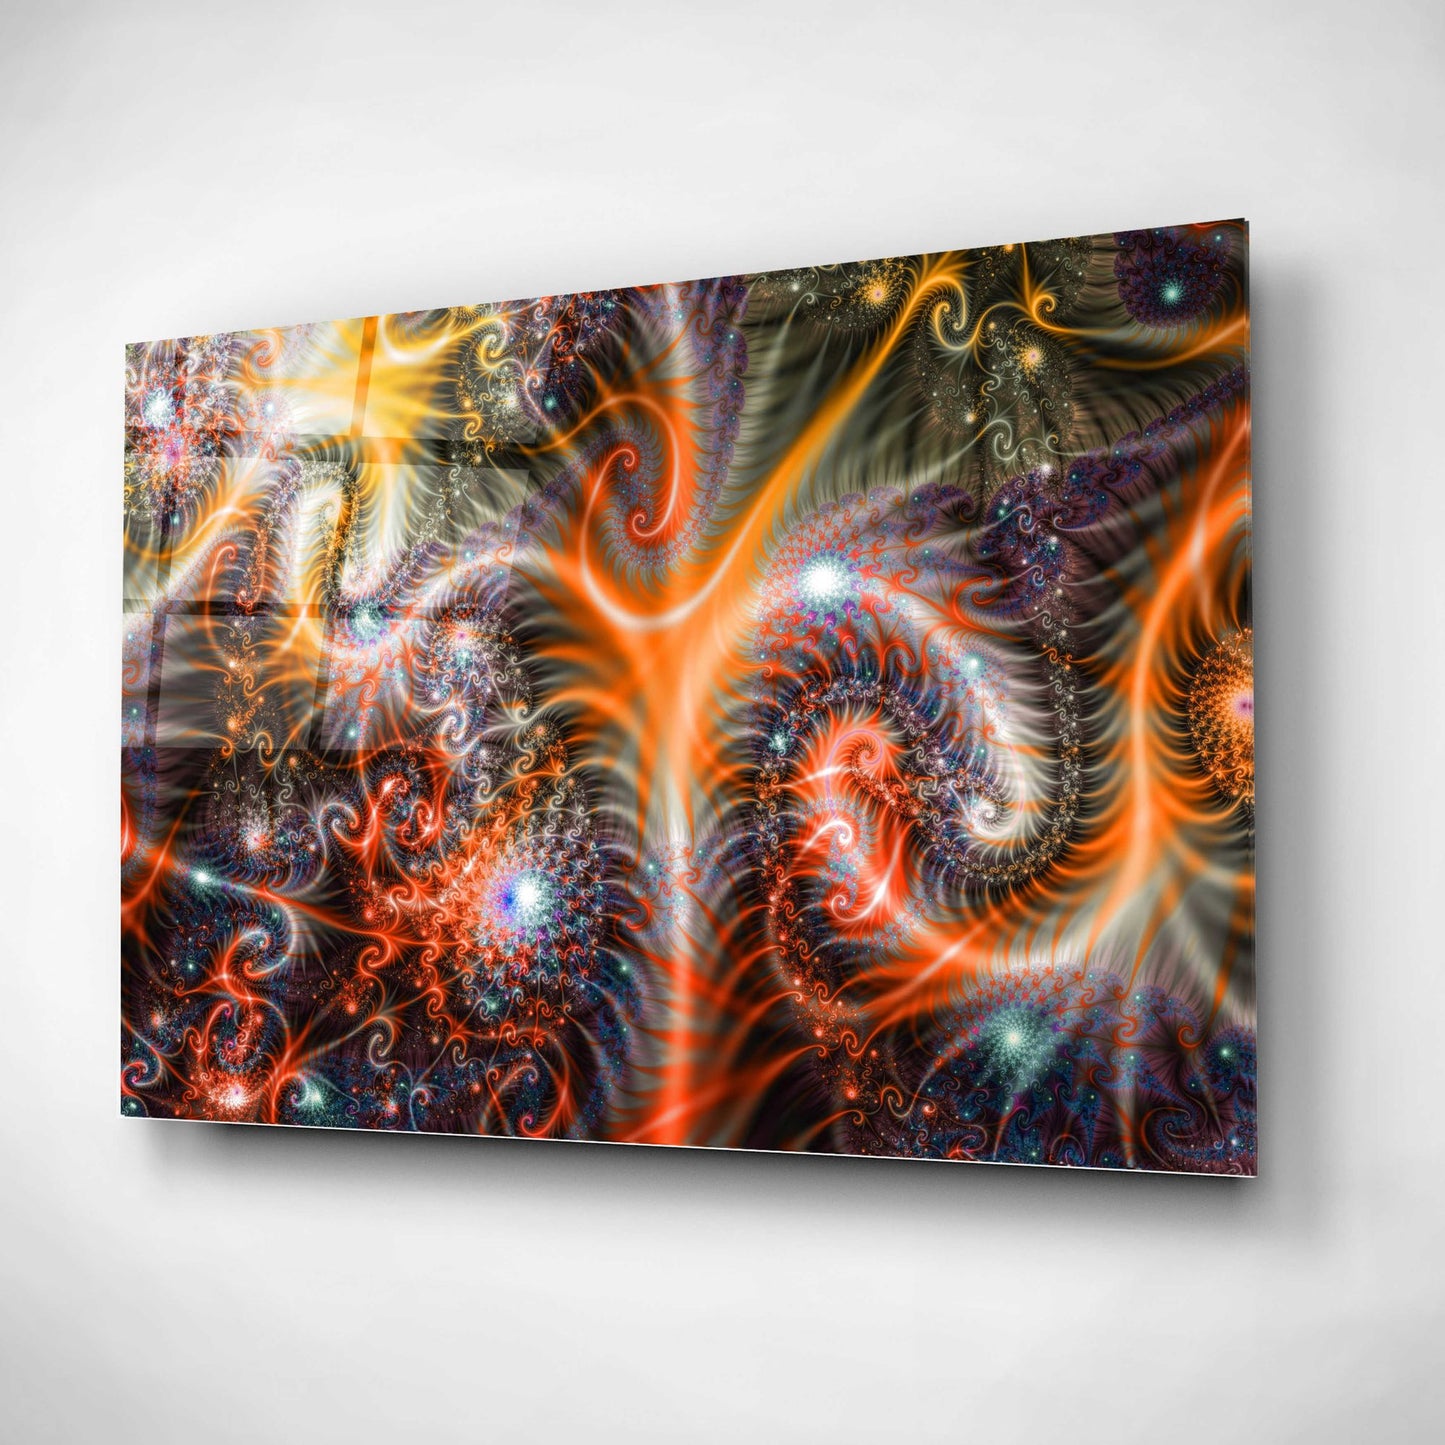 Epic Art 'Amoeba' Acrylic Glass Wall Art,12x16